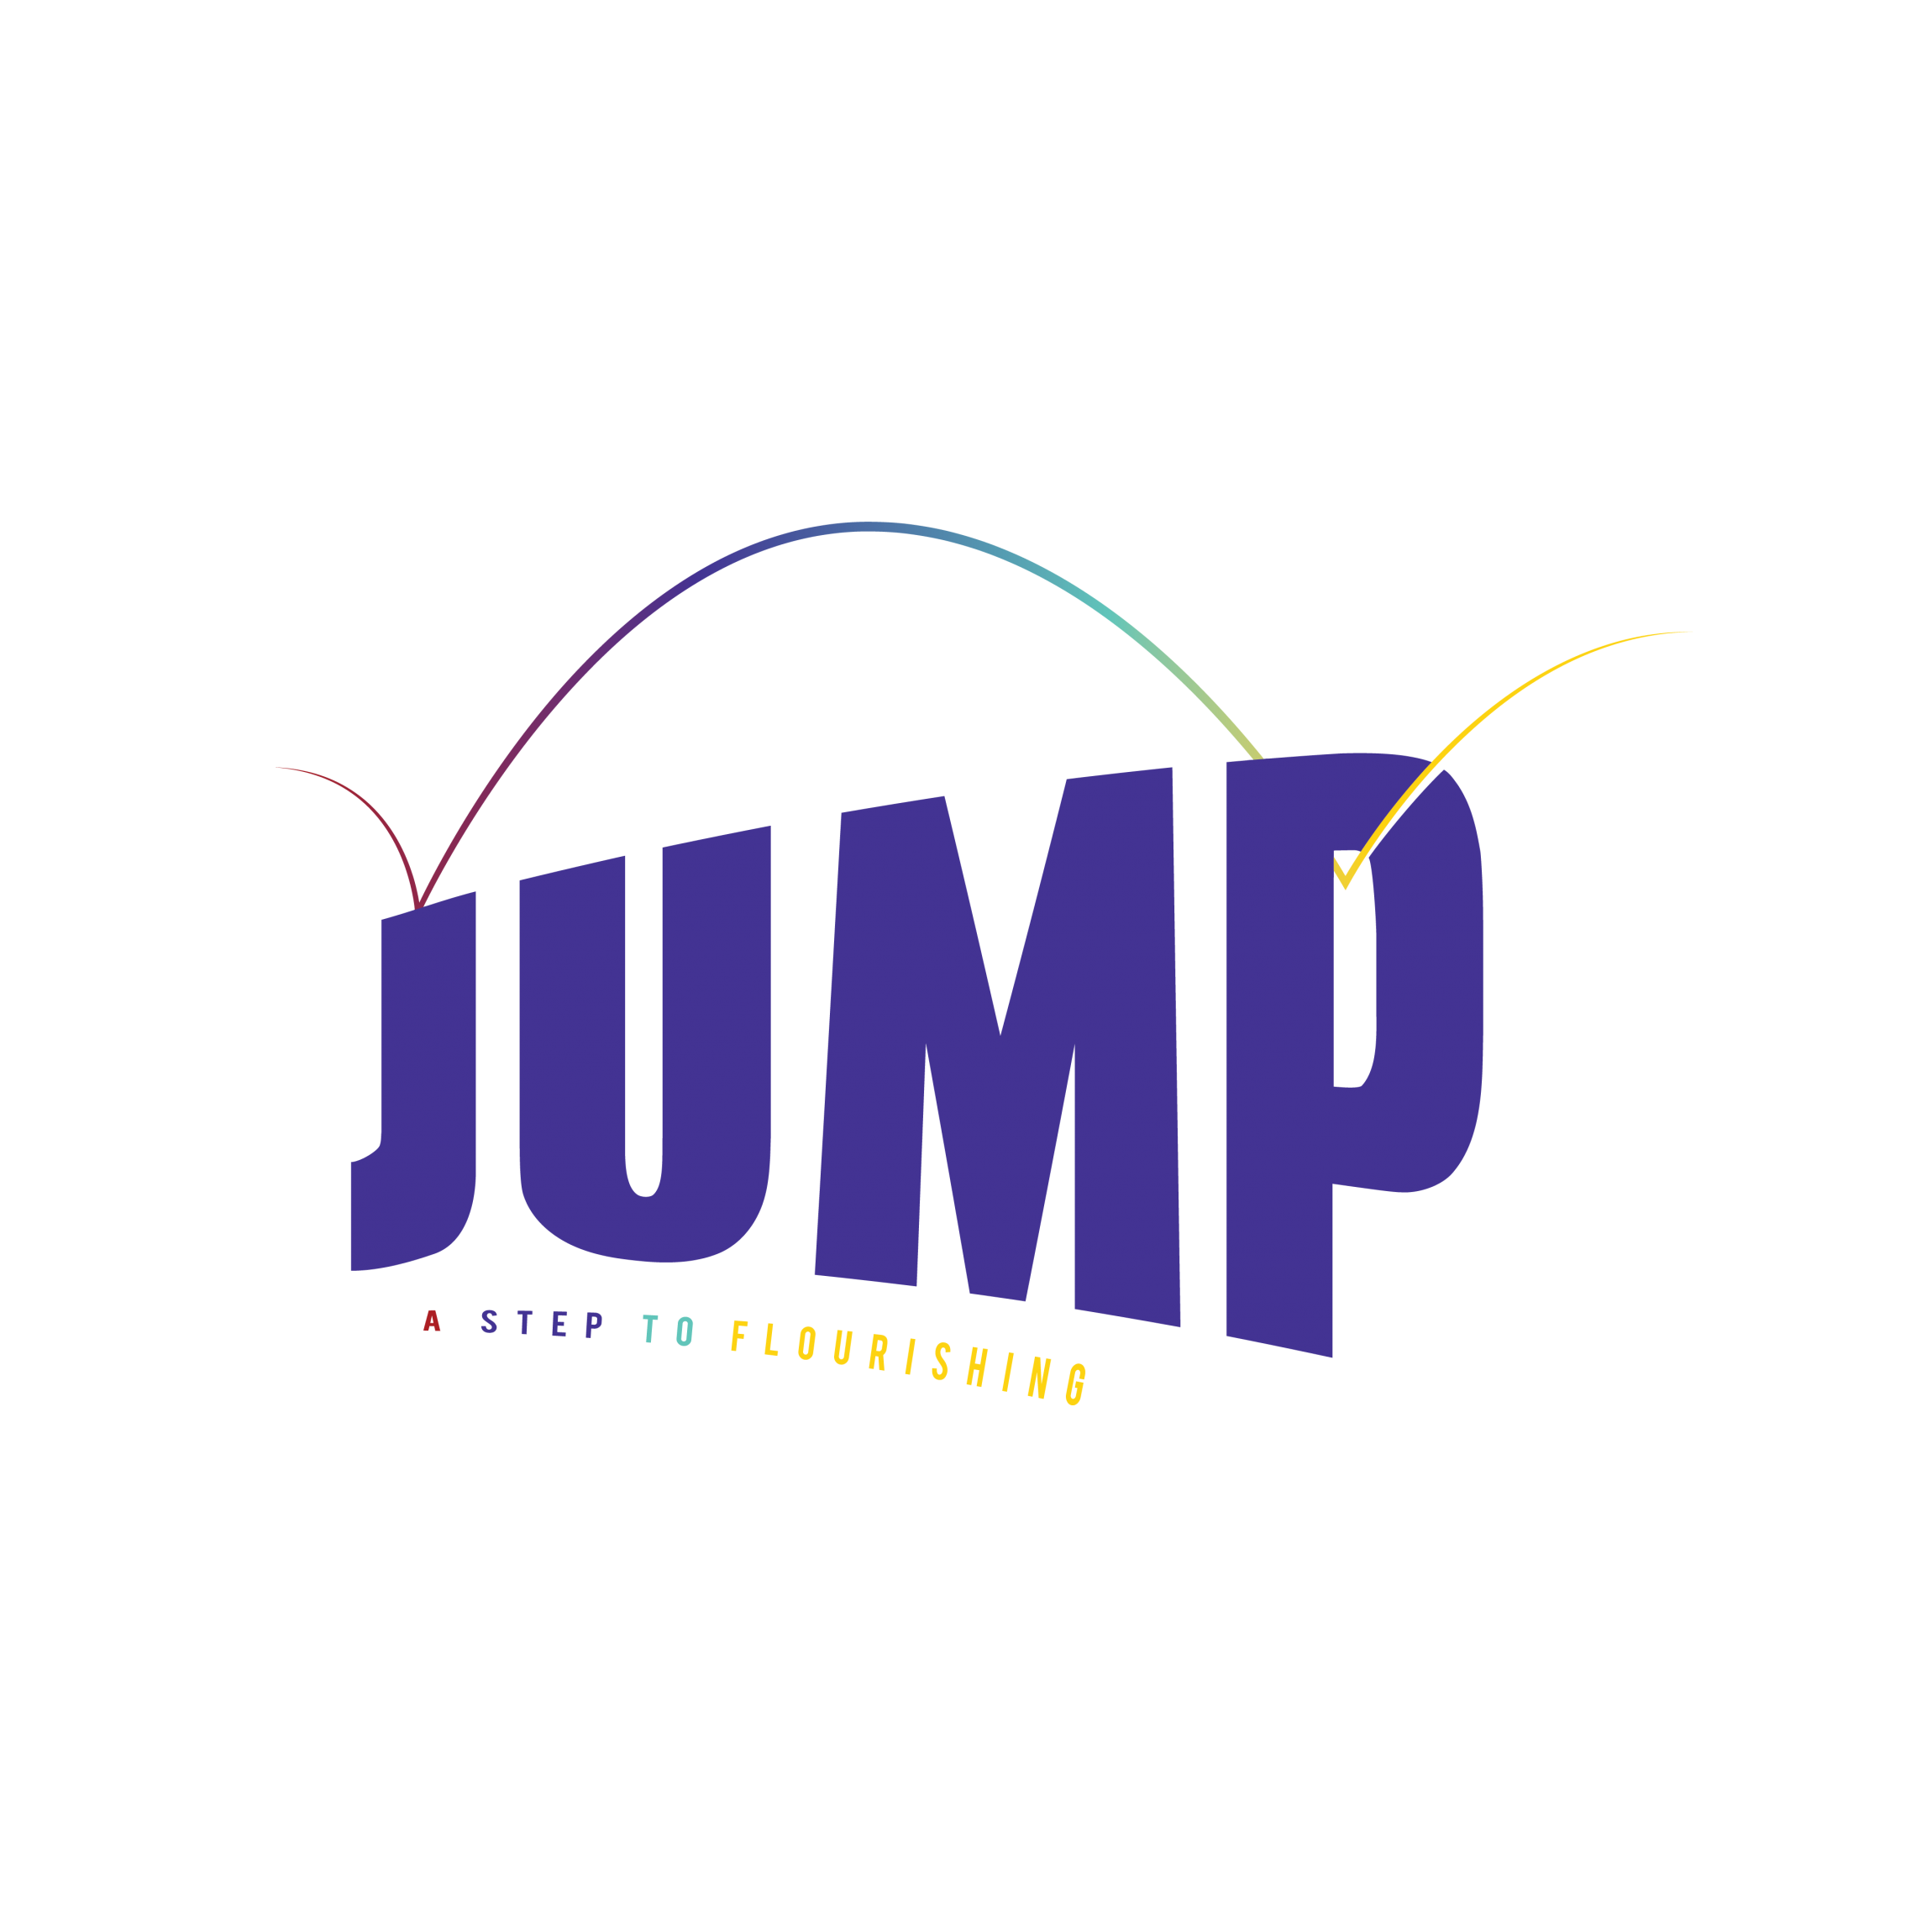 Self Photos / Files - JUMP logo-01